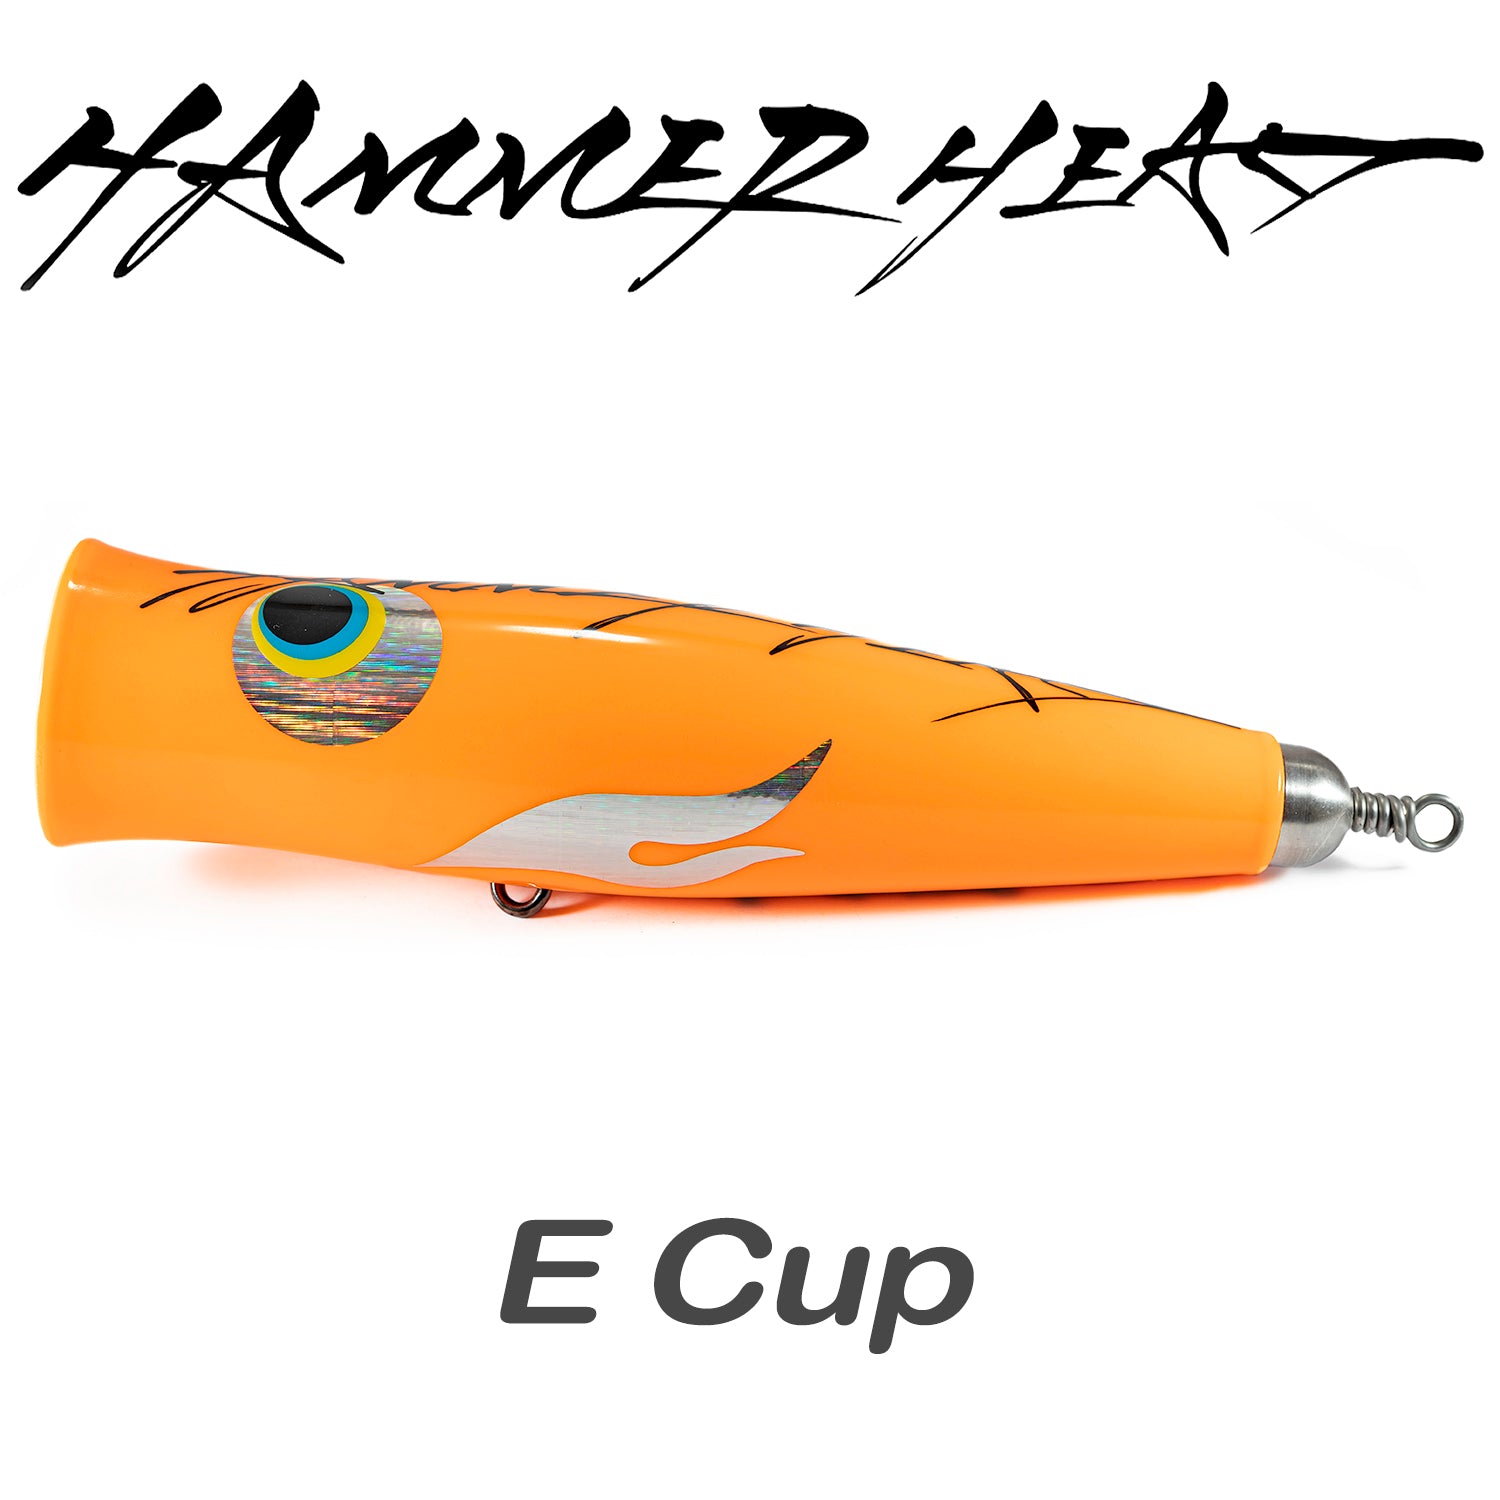 Hammerhead E Cup